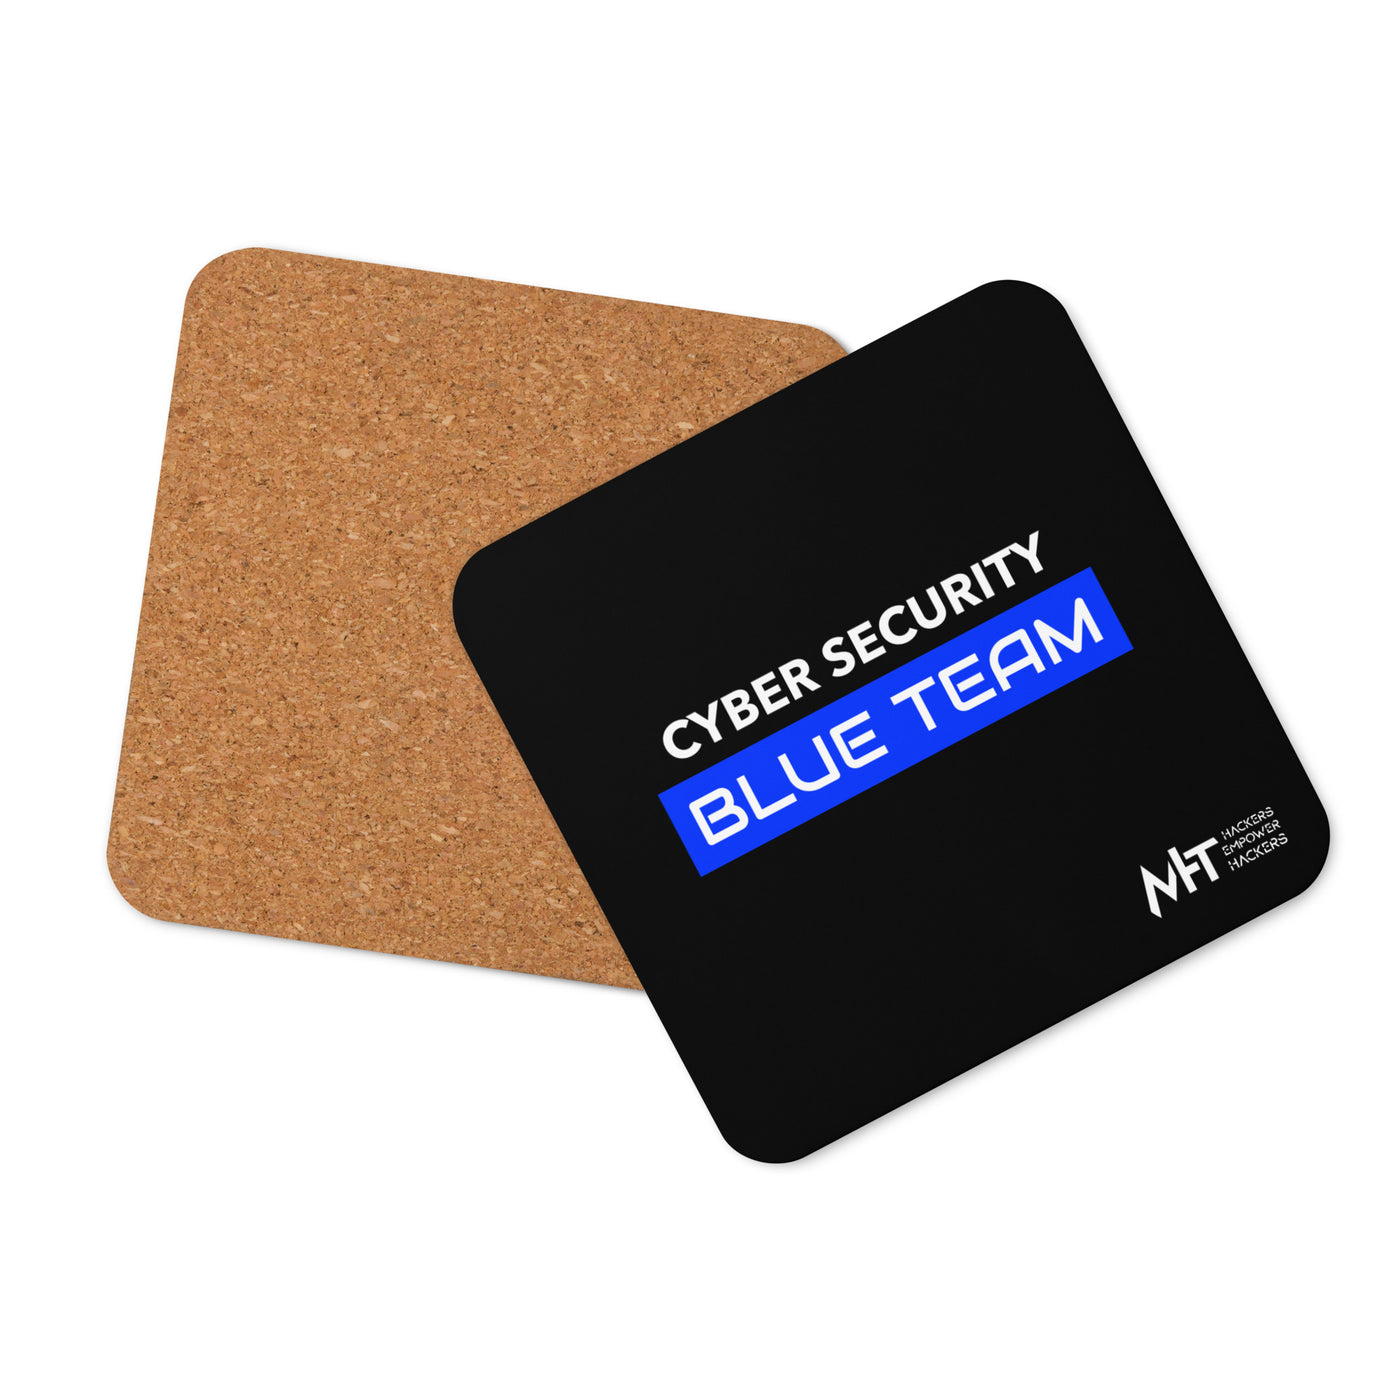 Cyber Security Blue Team V12 - Cork-back coaster